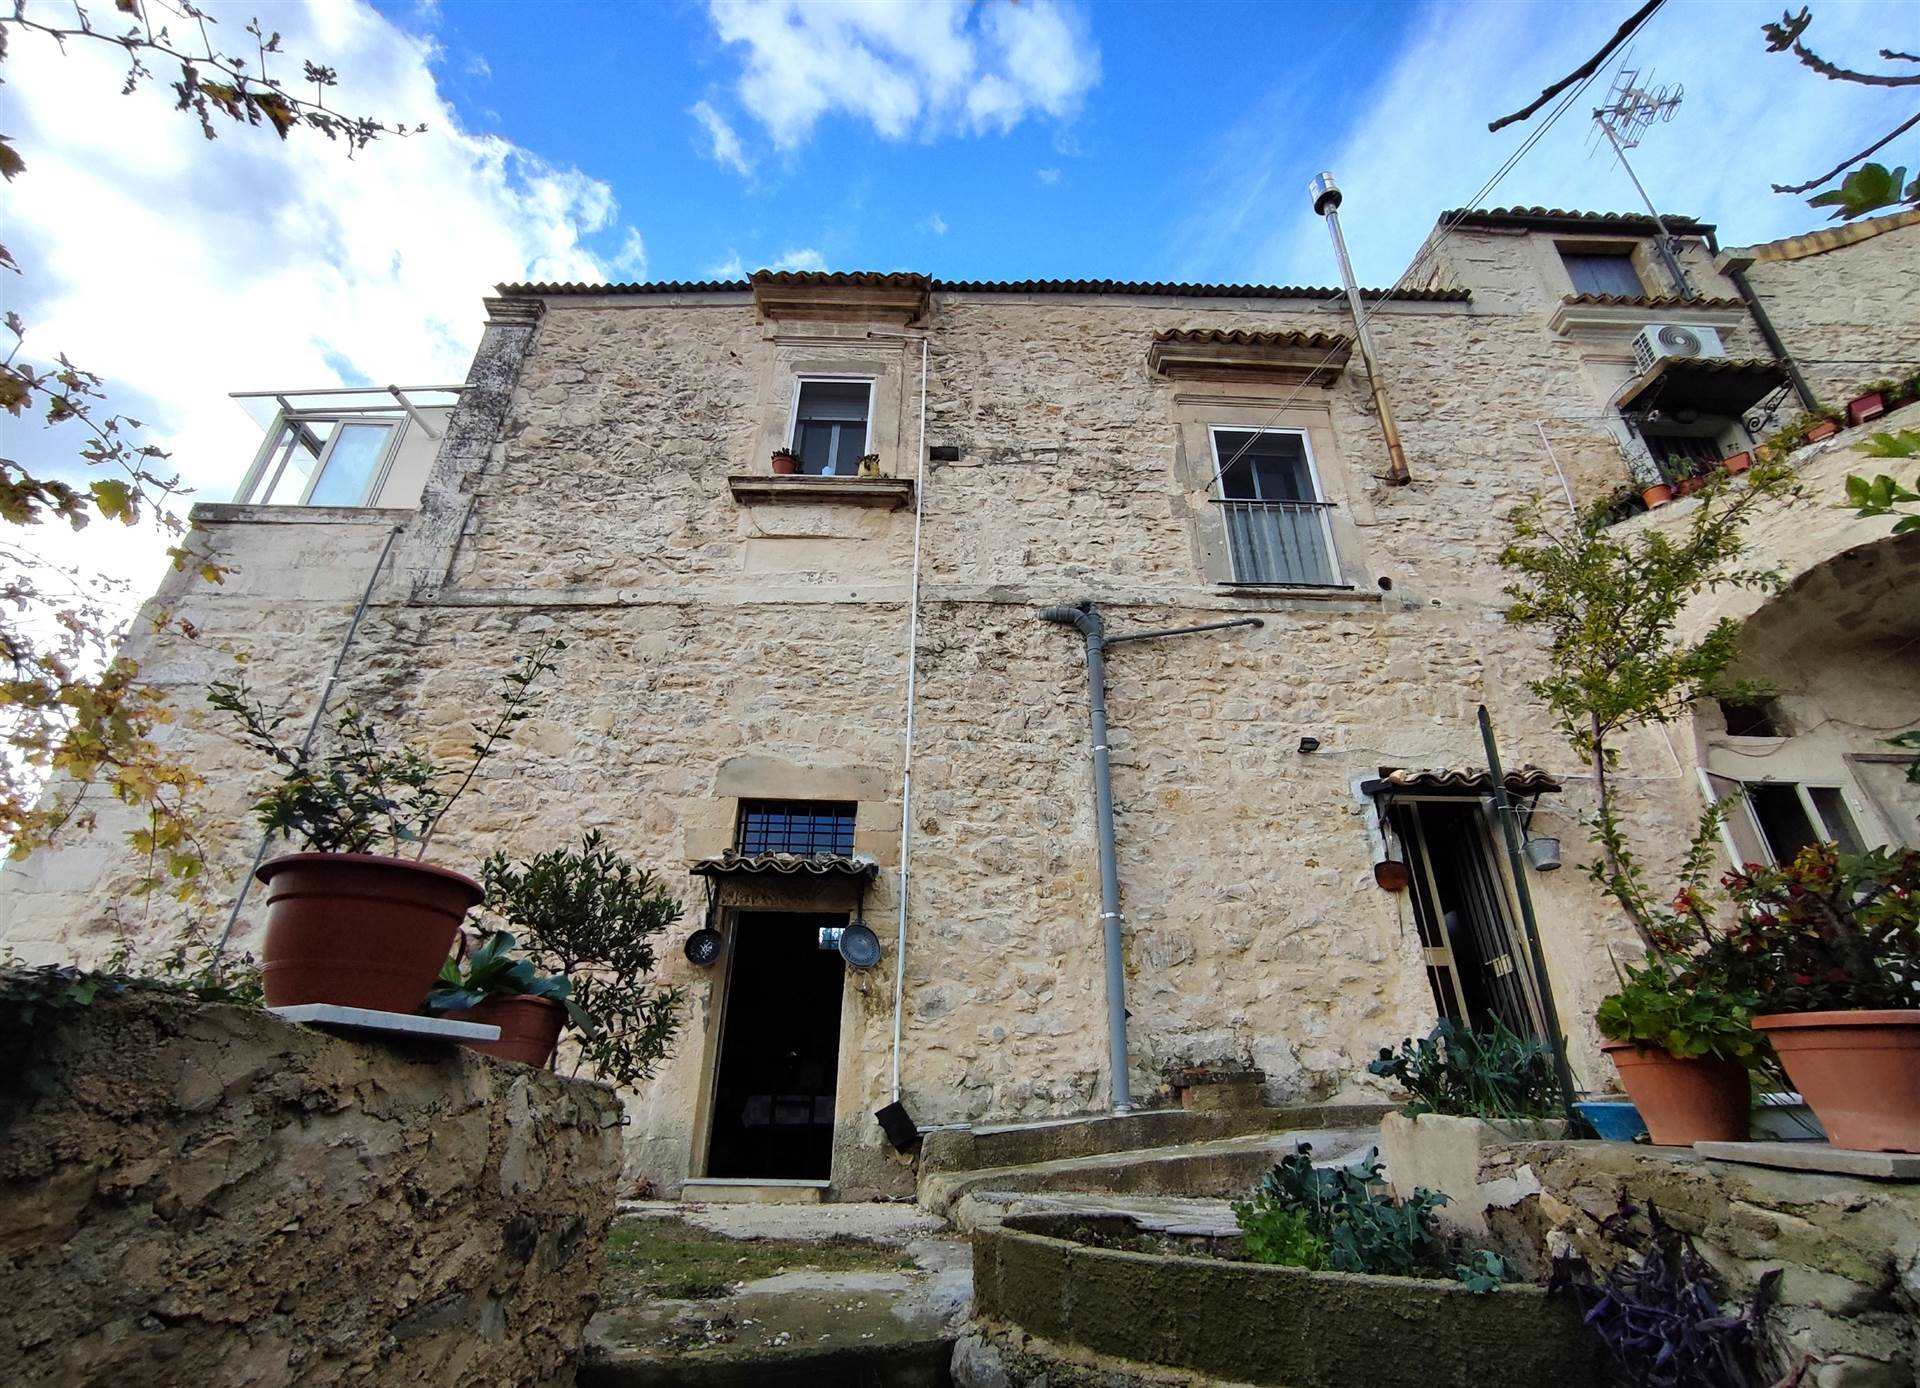 Casa singola in zona Ibla a Ragusa